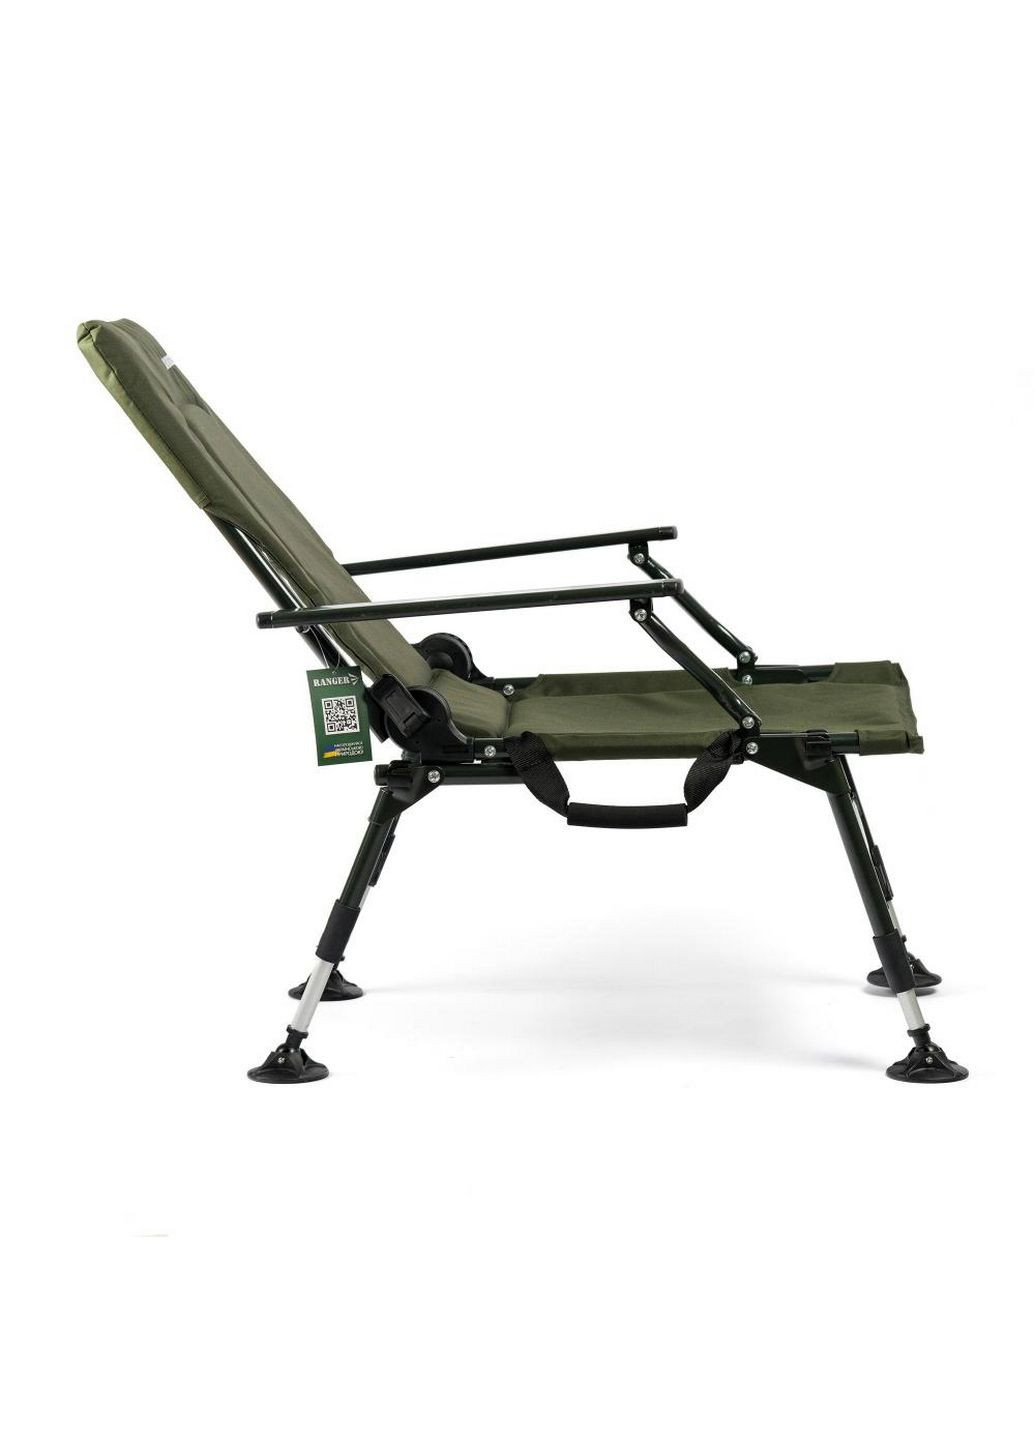 Карповое кресло Comfort SL-110 Ranger (292577265)